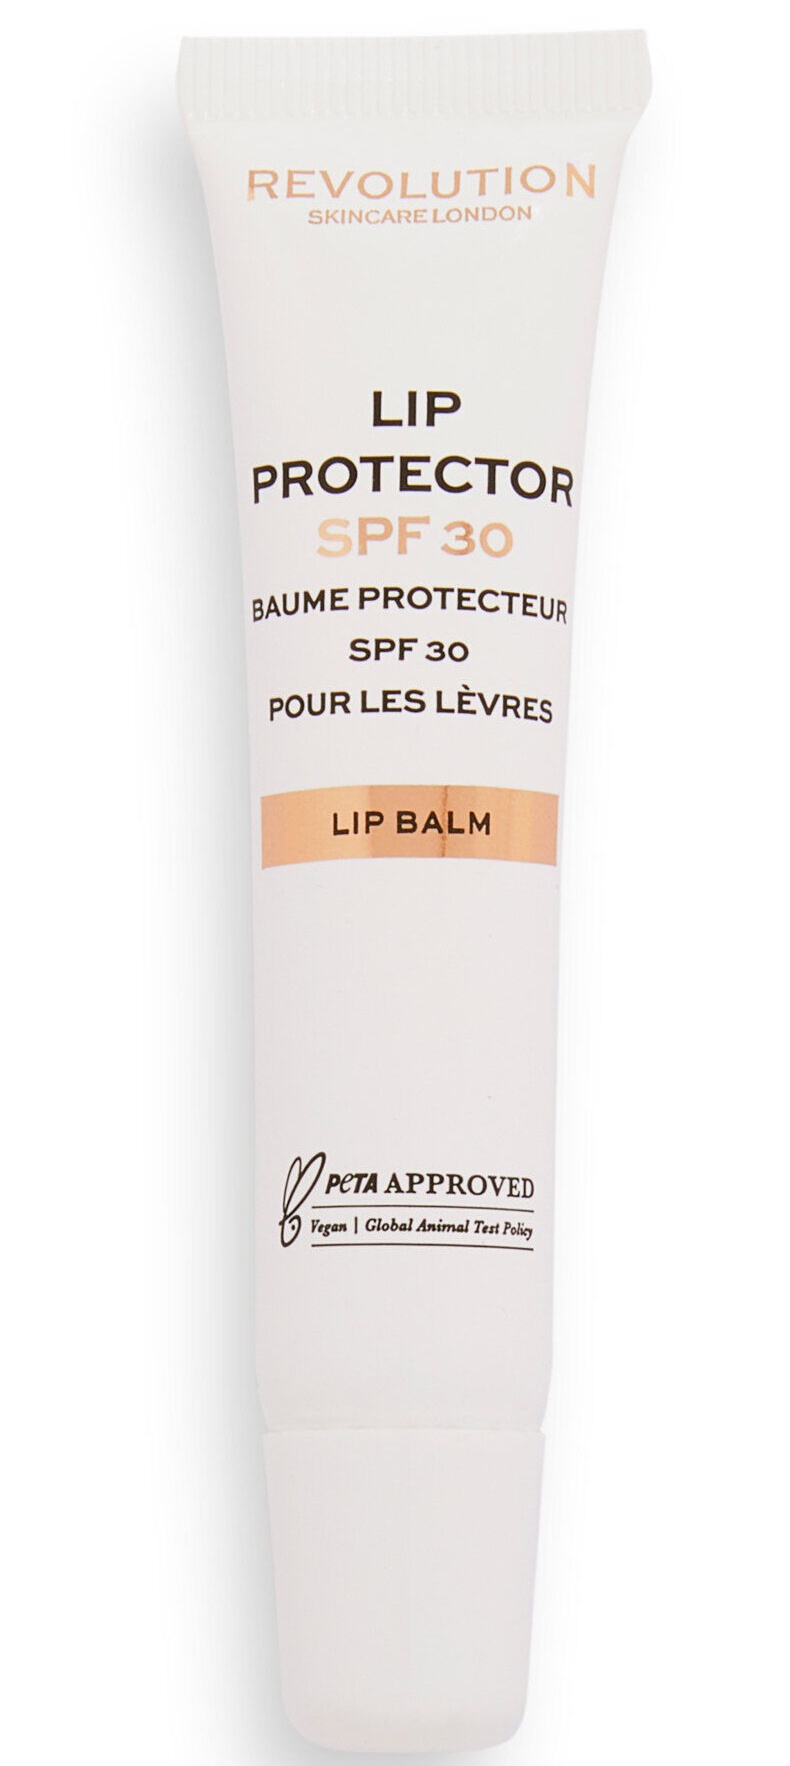 Revolution Skincare Lip Protector SPF 30 Lip Balm